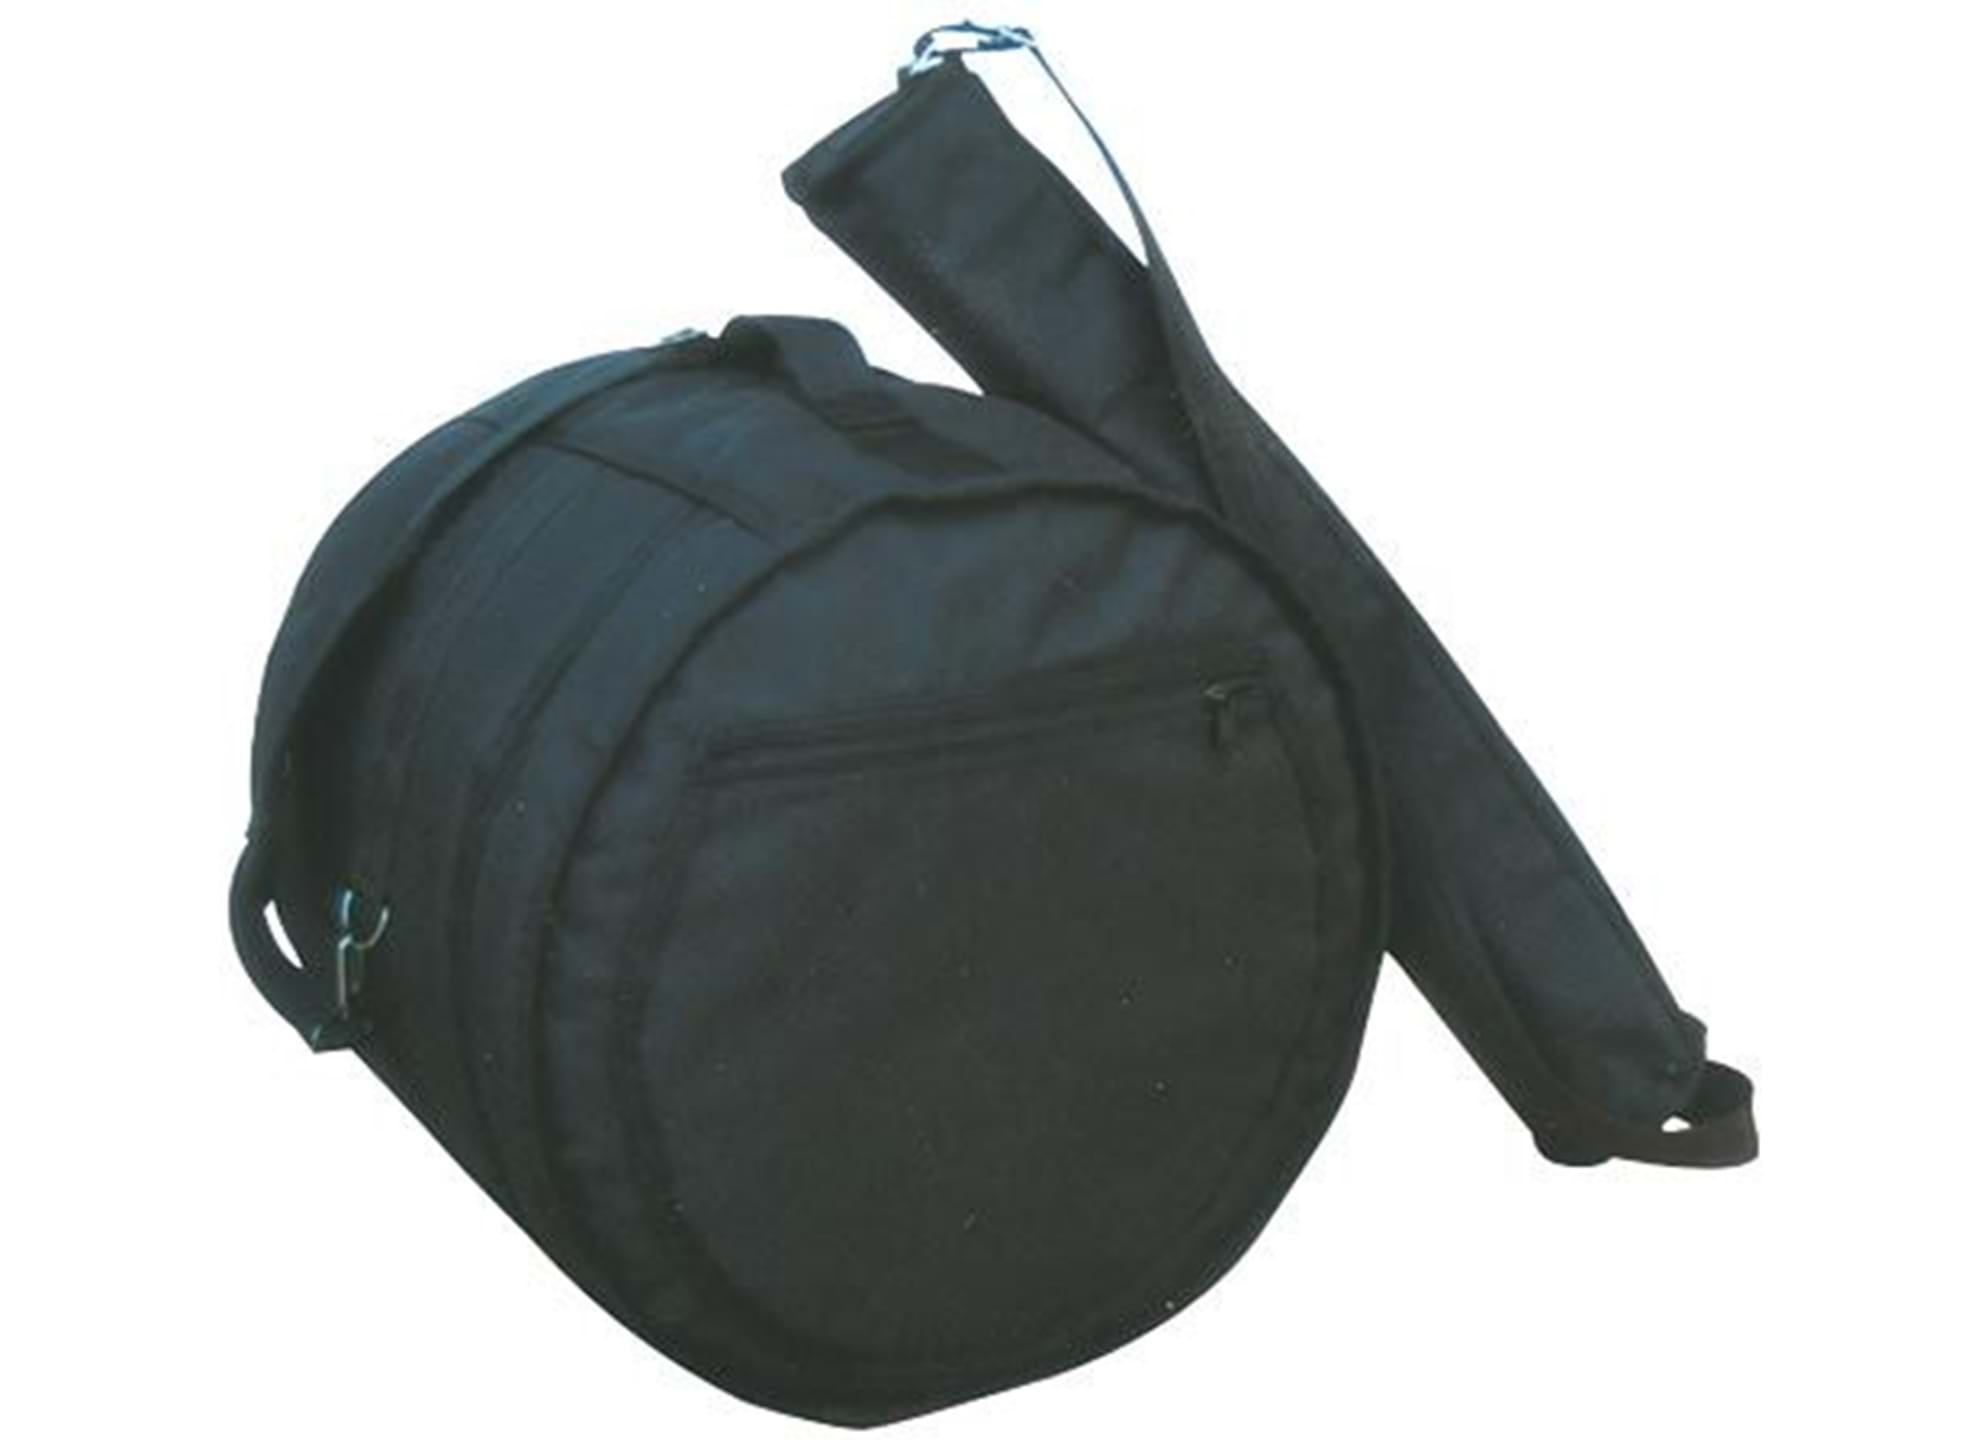 MPB-1400 Timbale gig bag